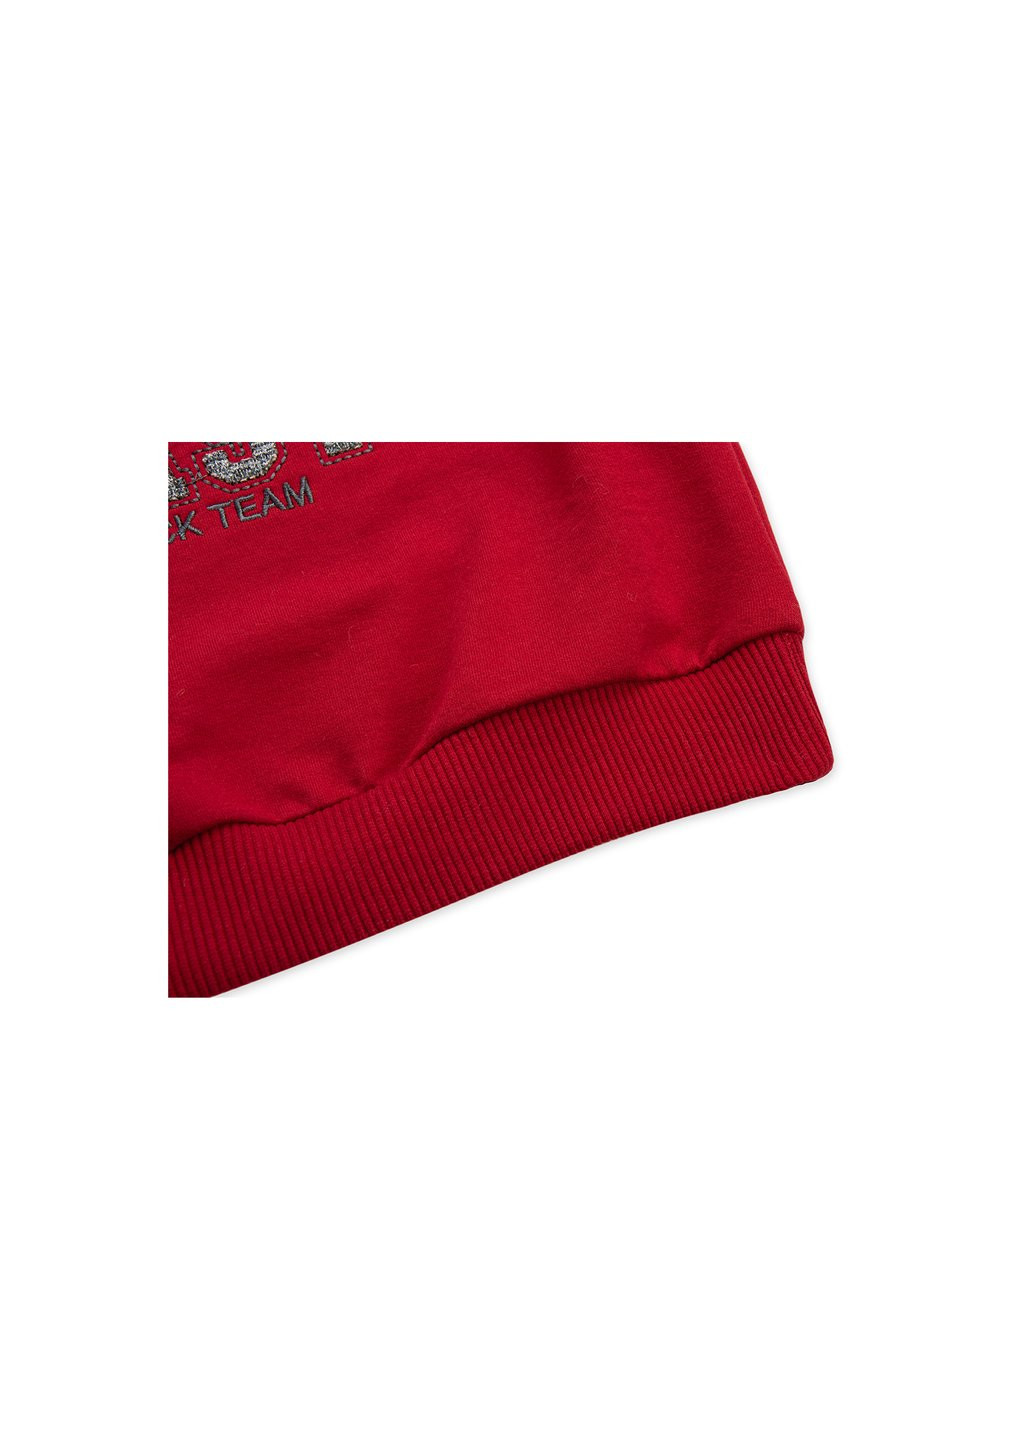 Червоний демісезонний набір дитячого одягу кофта з брюками "west coast" (8248-86b-red) Breeze